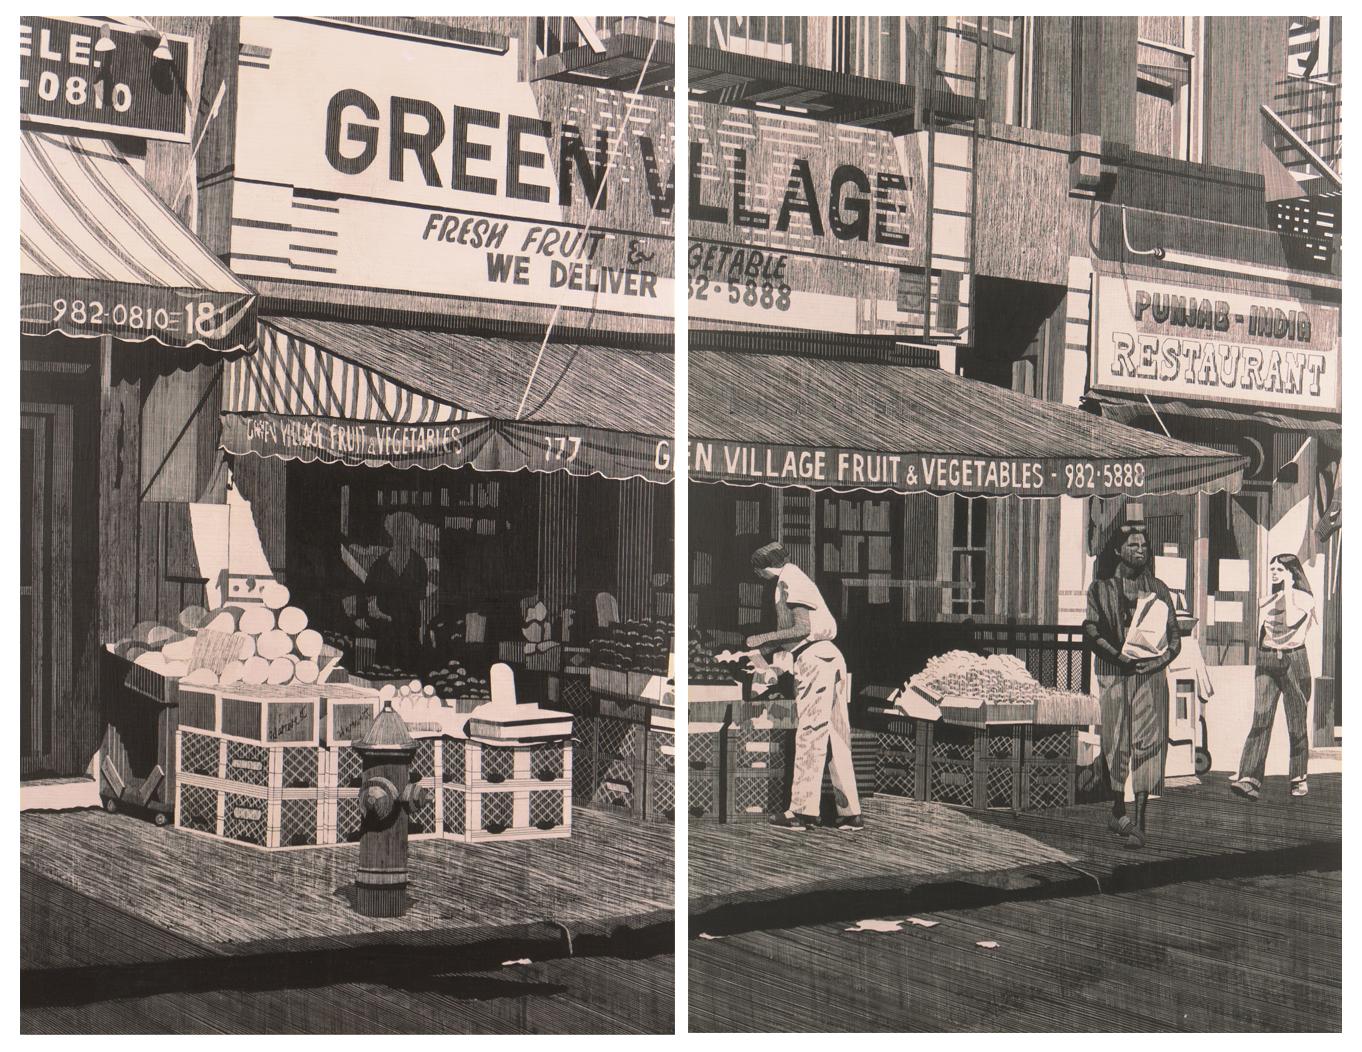 'Green Village Market, Bleecker Street', Manhattan, New York, Grisaille Diptych